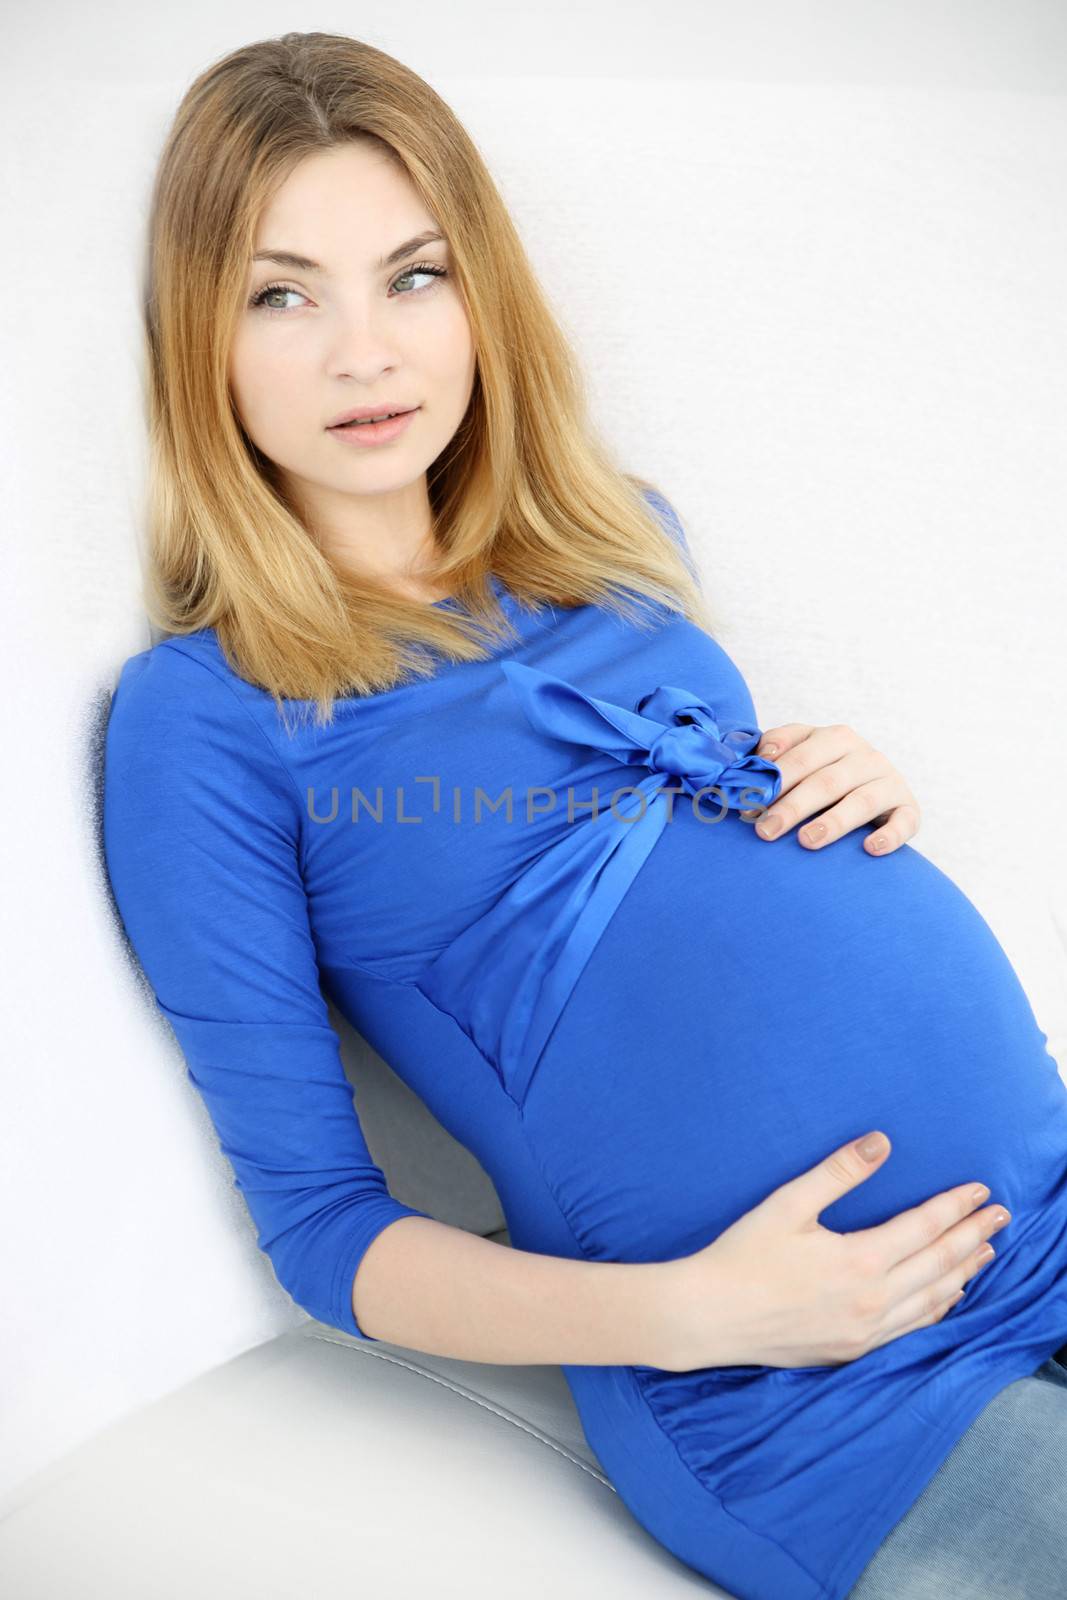 Pregnant woman by robert_przybysz